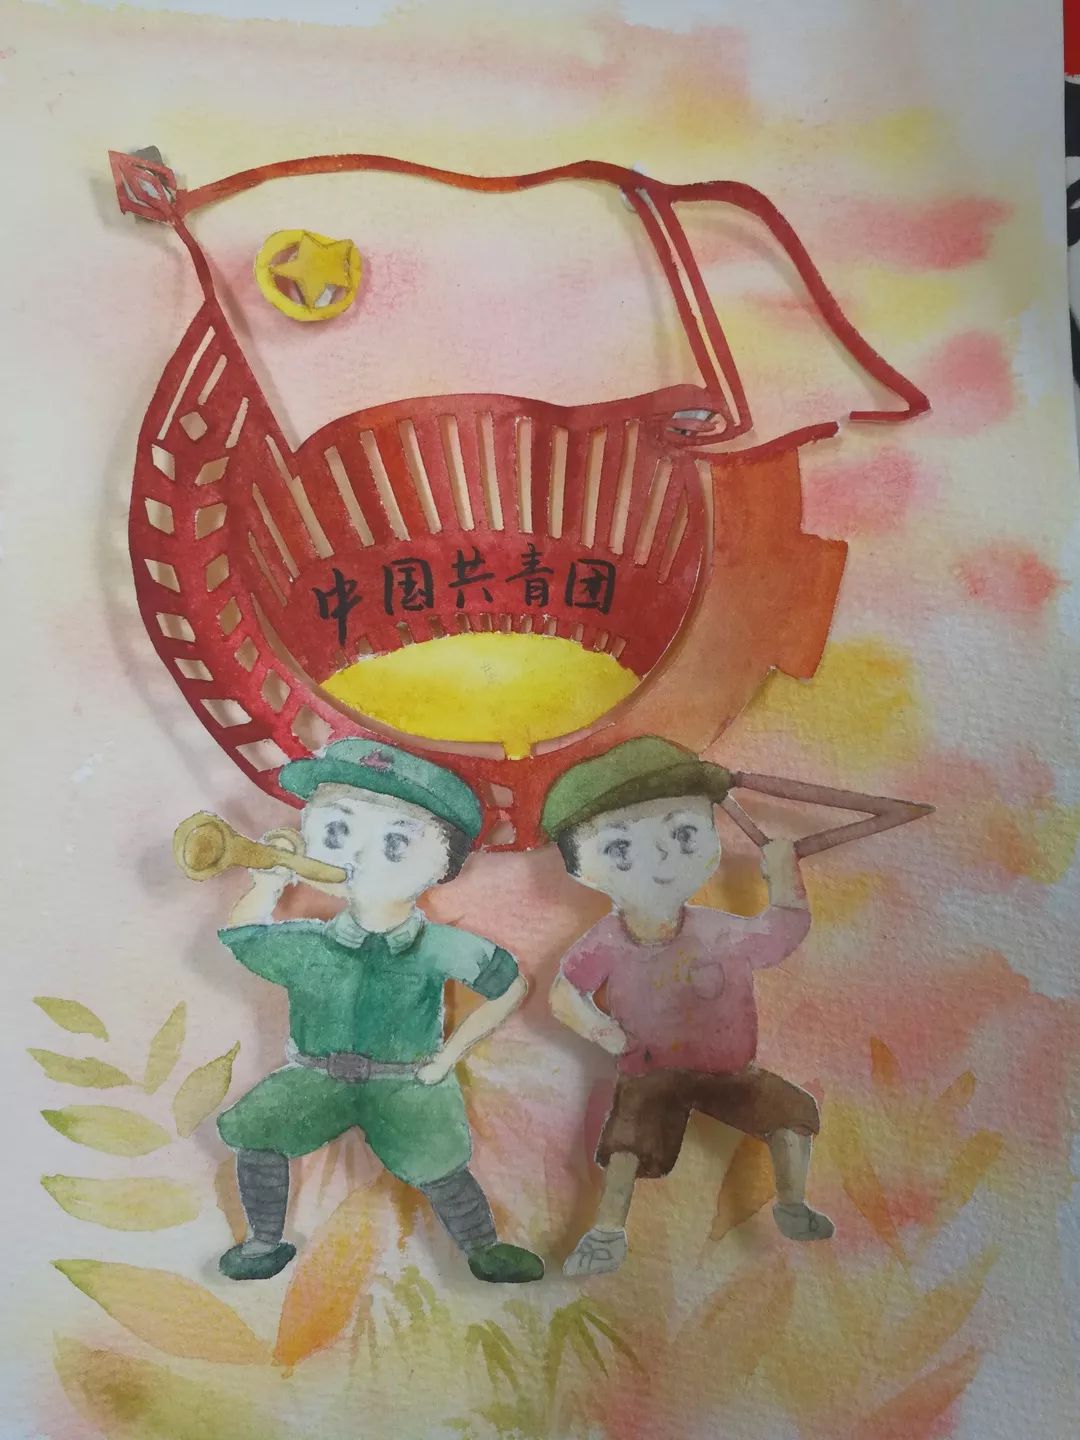 《红领巾心向共青团 》云和县古坊小学 严凯瑞手工绘画通过此次活动